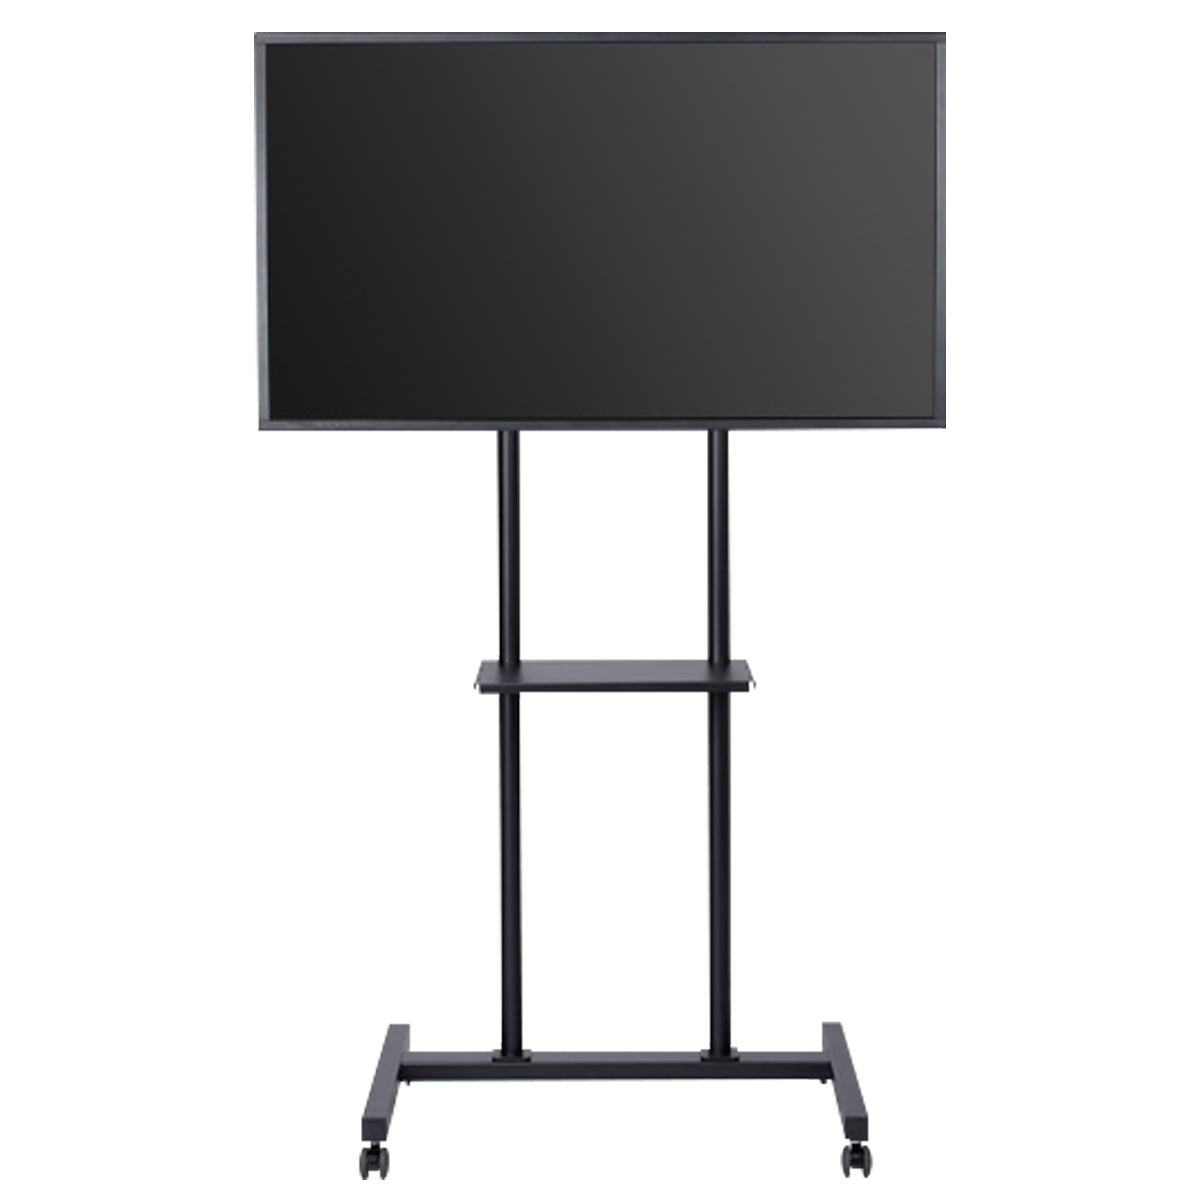 移動式テレビスタンド 幅800 奥行754 高さ1600 SDS-LPSK55 通販 オフィスアクセサリー・備品 オフィス家具のカグクロ